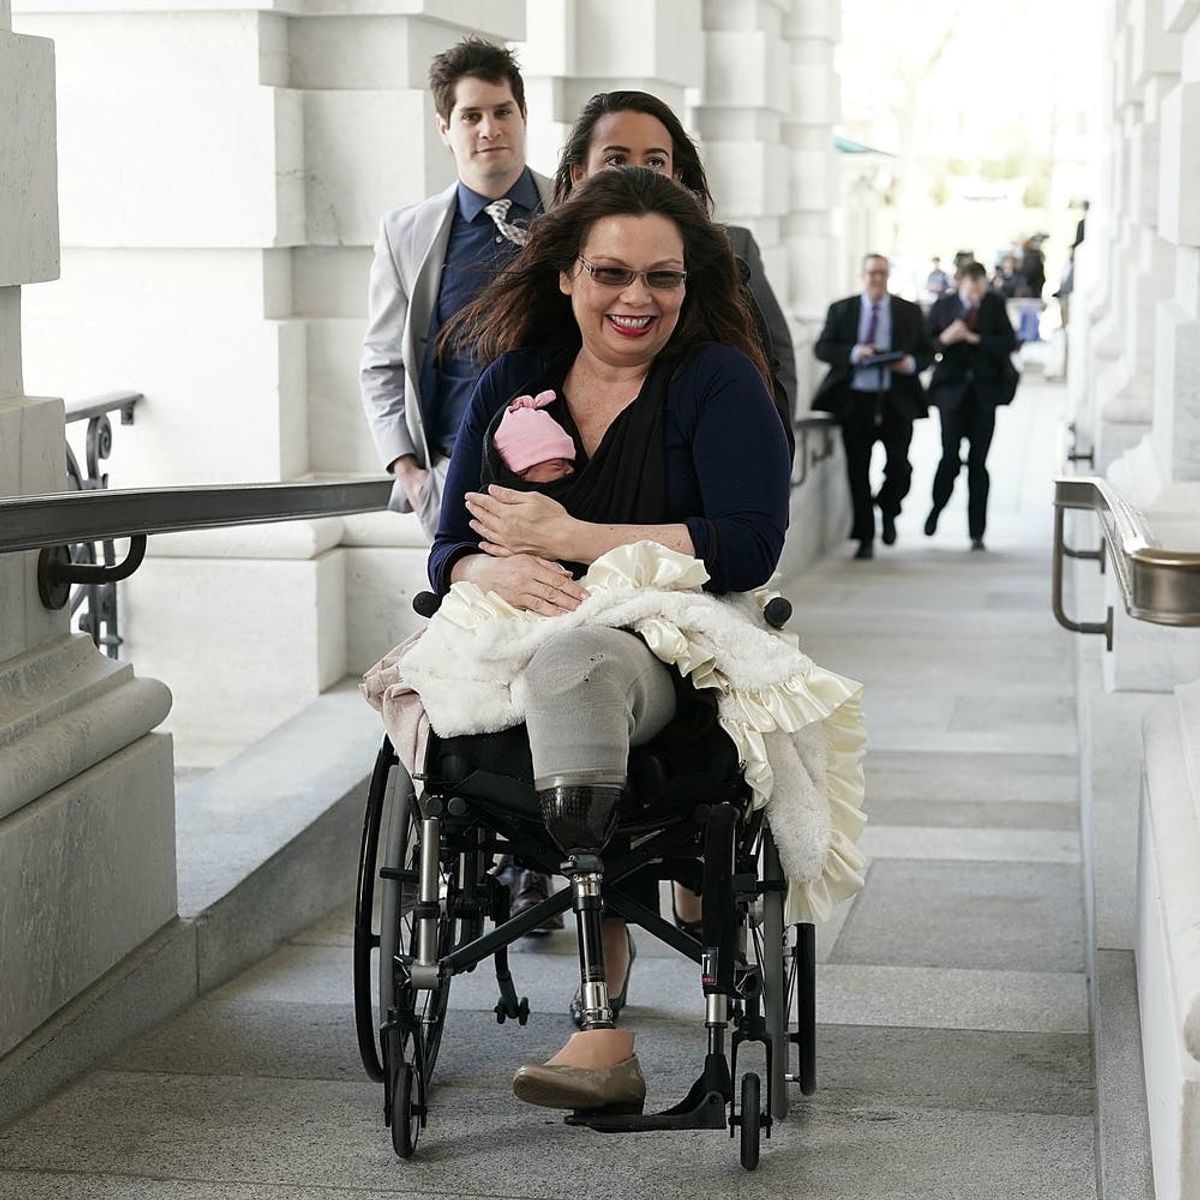 Sen. Tammy Duckworth Brought Her Newborn Daughter to the Senate Floor